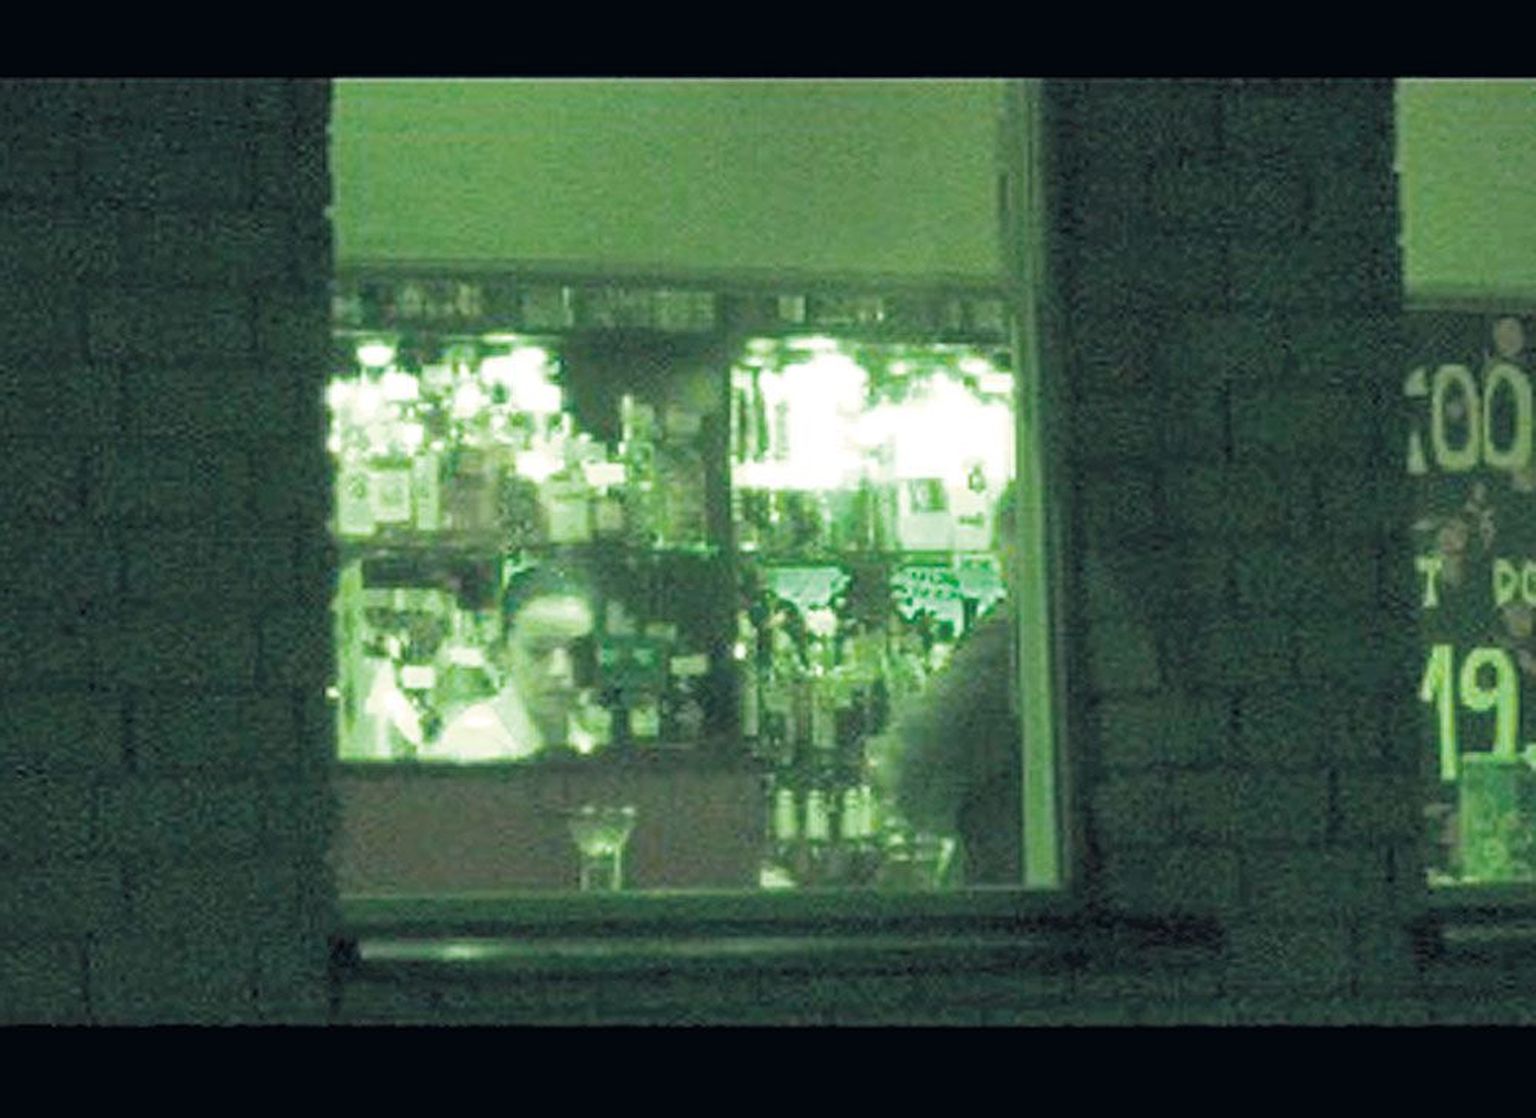 Stoppkaadrid videost, mis kujutab Tartu Postimehe õlleostu 23. oktoobri varahommikul Ringtee 28 tankla kõrvale rajatud kohvikust.